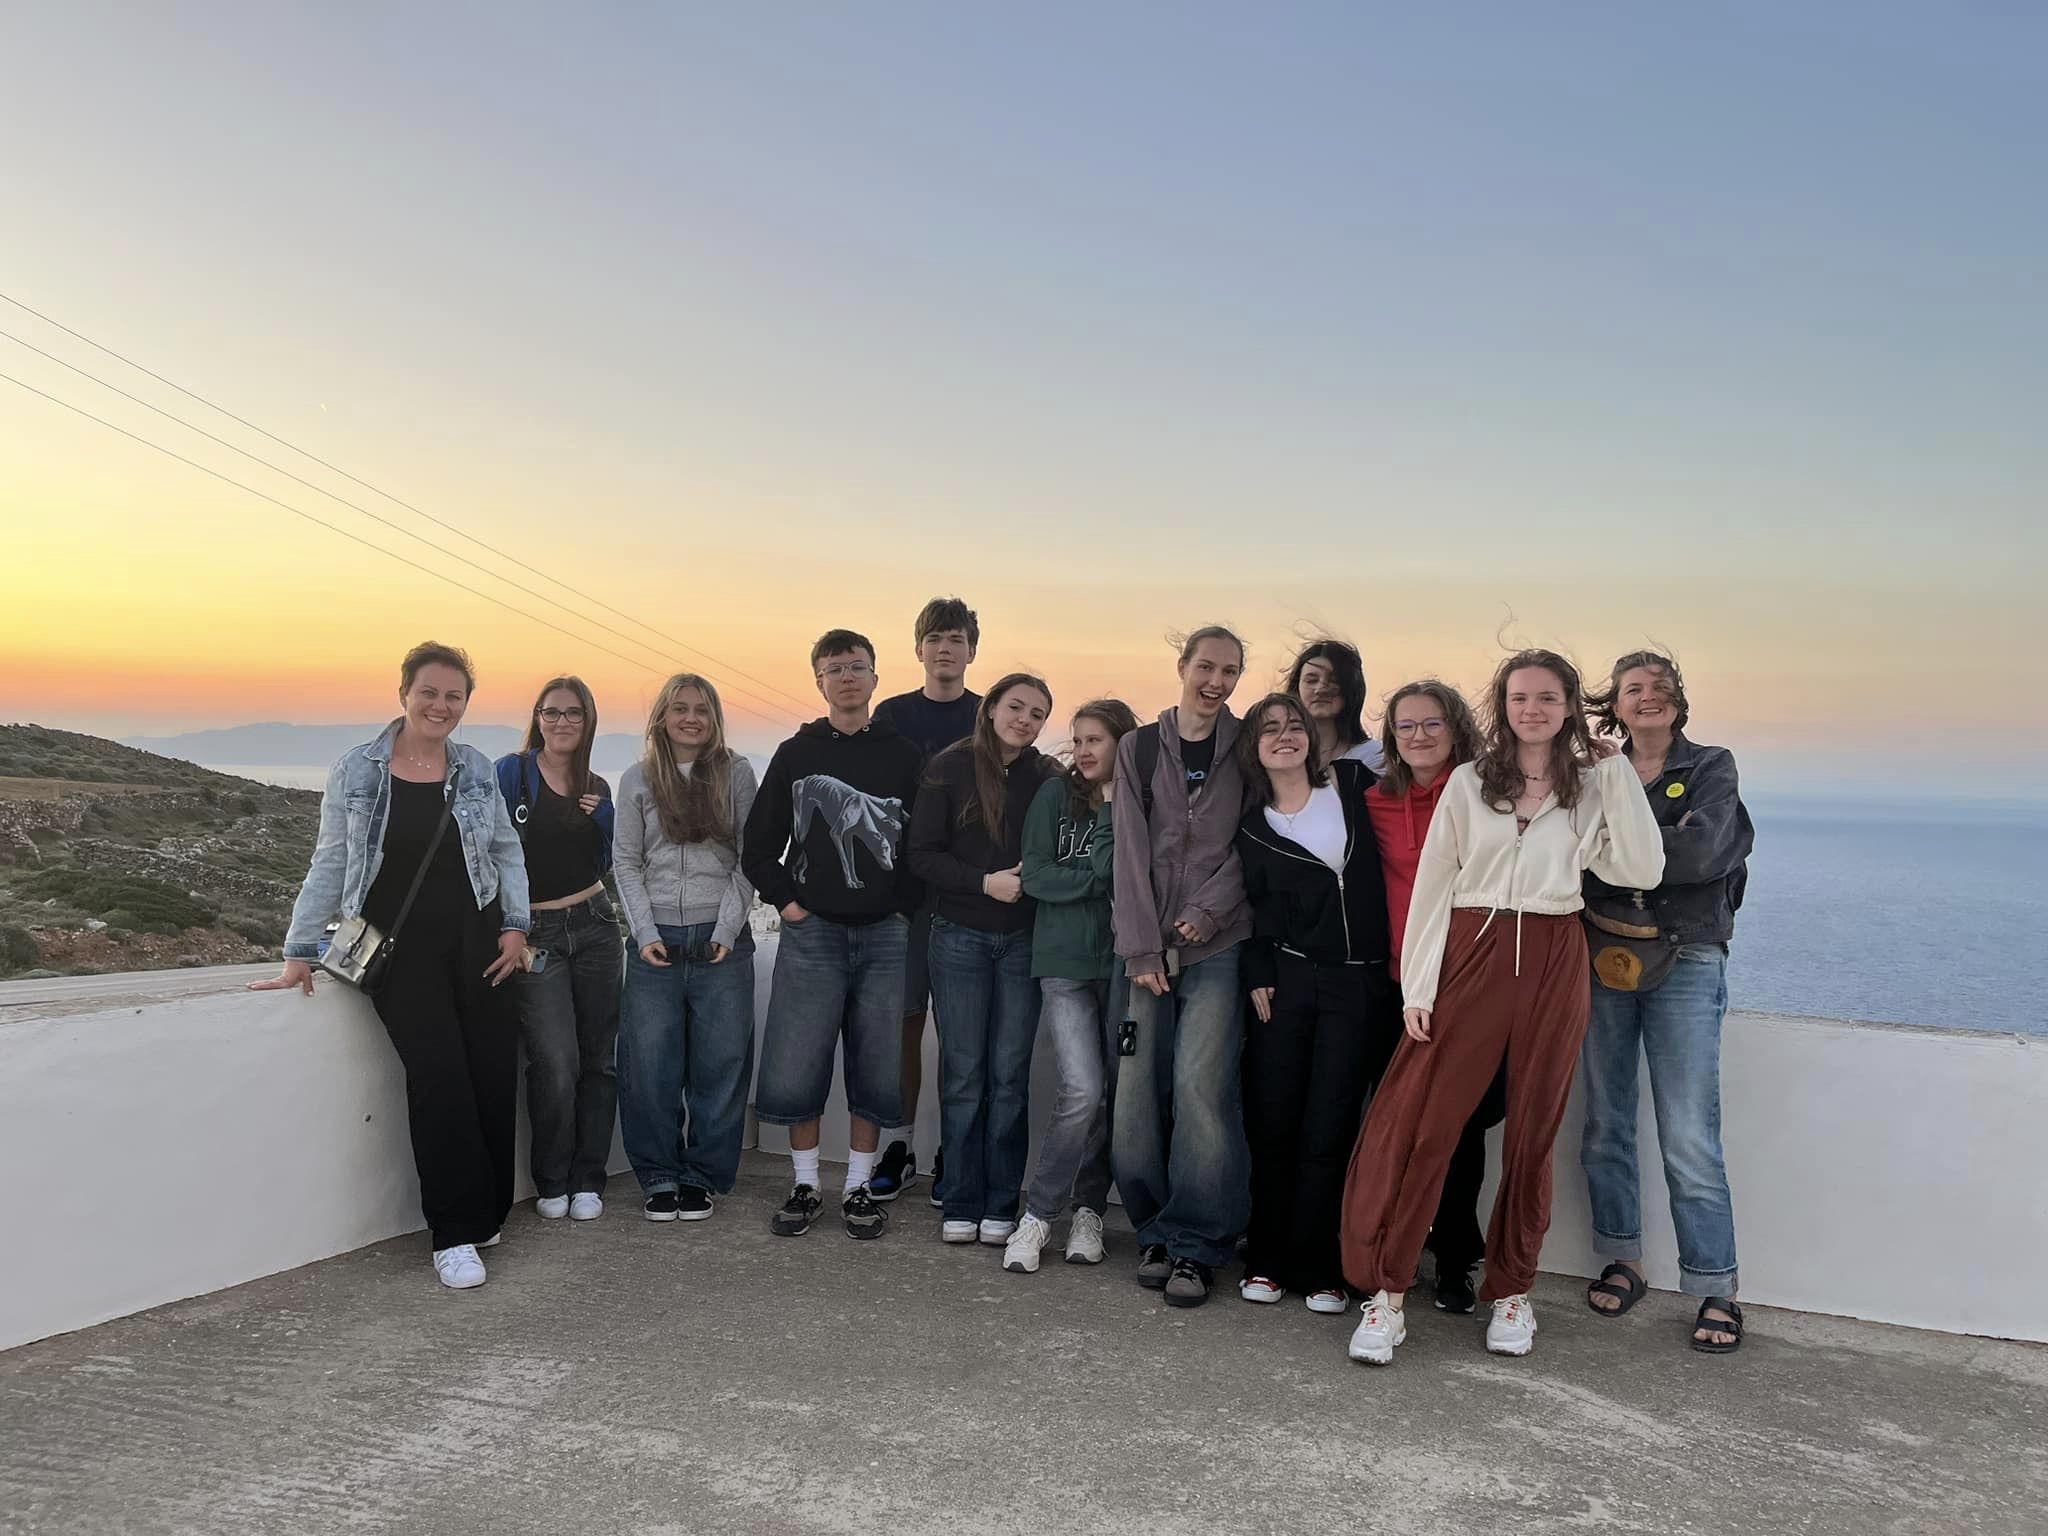 W dniach 14-21 kwietnia grupa 11 uczniów pod opieką p. Agnieszki Gemborys i p. Katarzyny Ścisłowicz spędziła wspaniałe chwile w Grecji na pięknej wyspie Sifnos. Wyjazd odbył się w ramach projektu Erasmus+ „Troskliwa Szkoła - Zjednoczeni w Różnorodności,”, w tle morze i zachód słońca